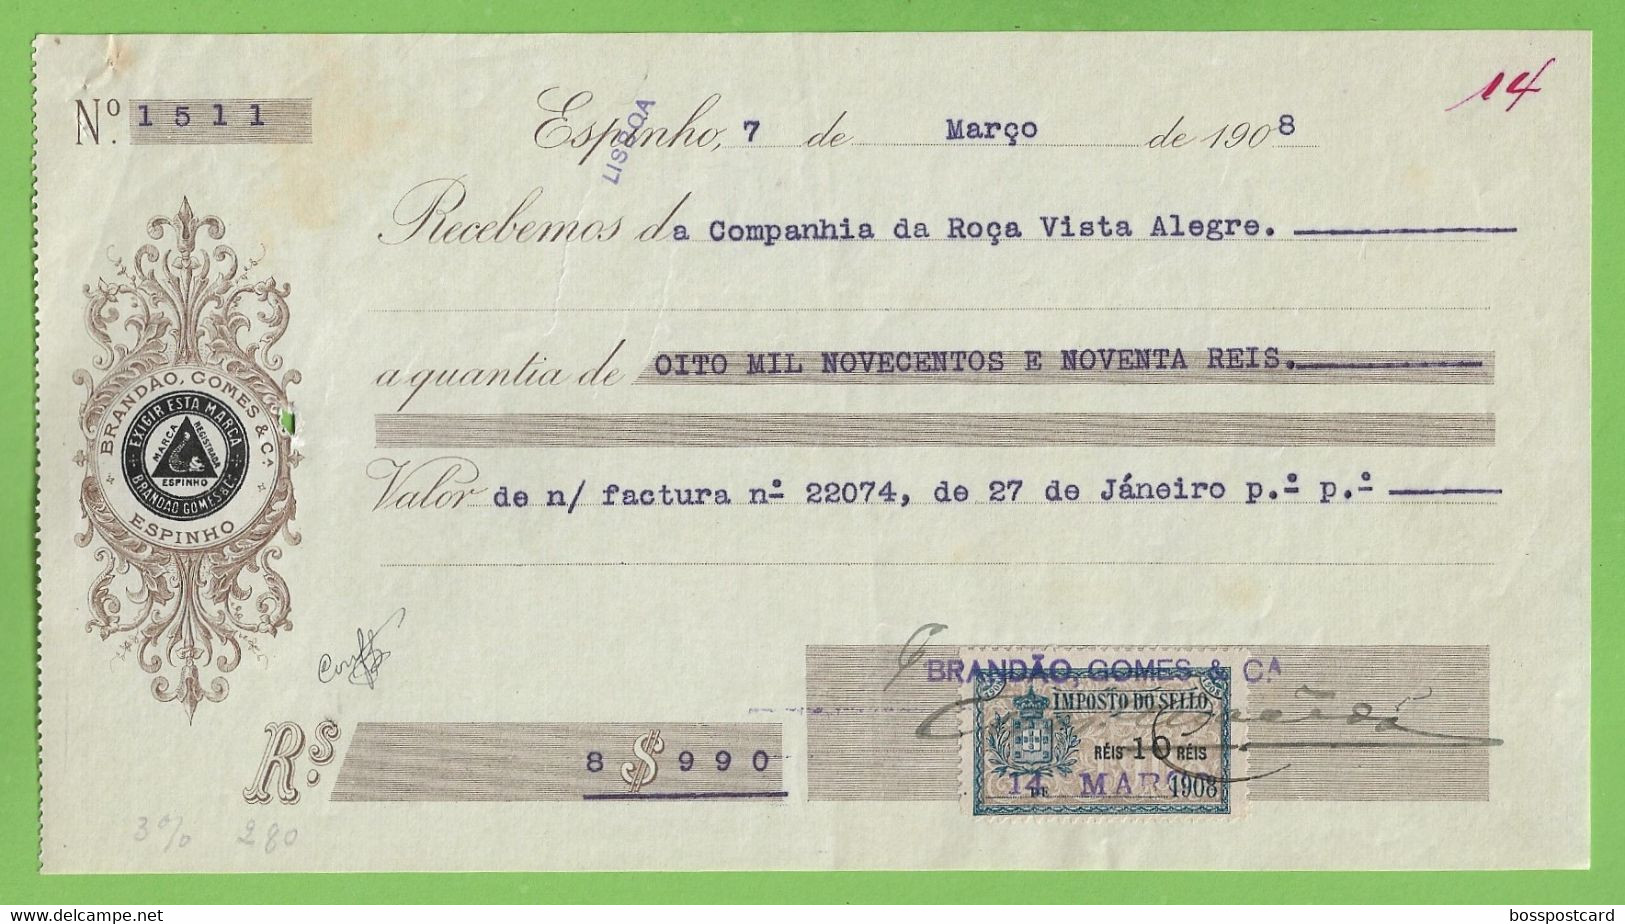 Espinho - Fábrica De Conservas De Sardinhas Brandão Gomes - Recibo De 1908 - Papéis De Valor - Portugal - Portugal